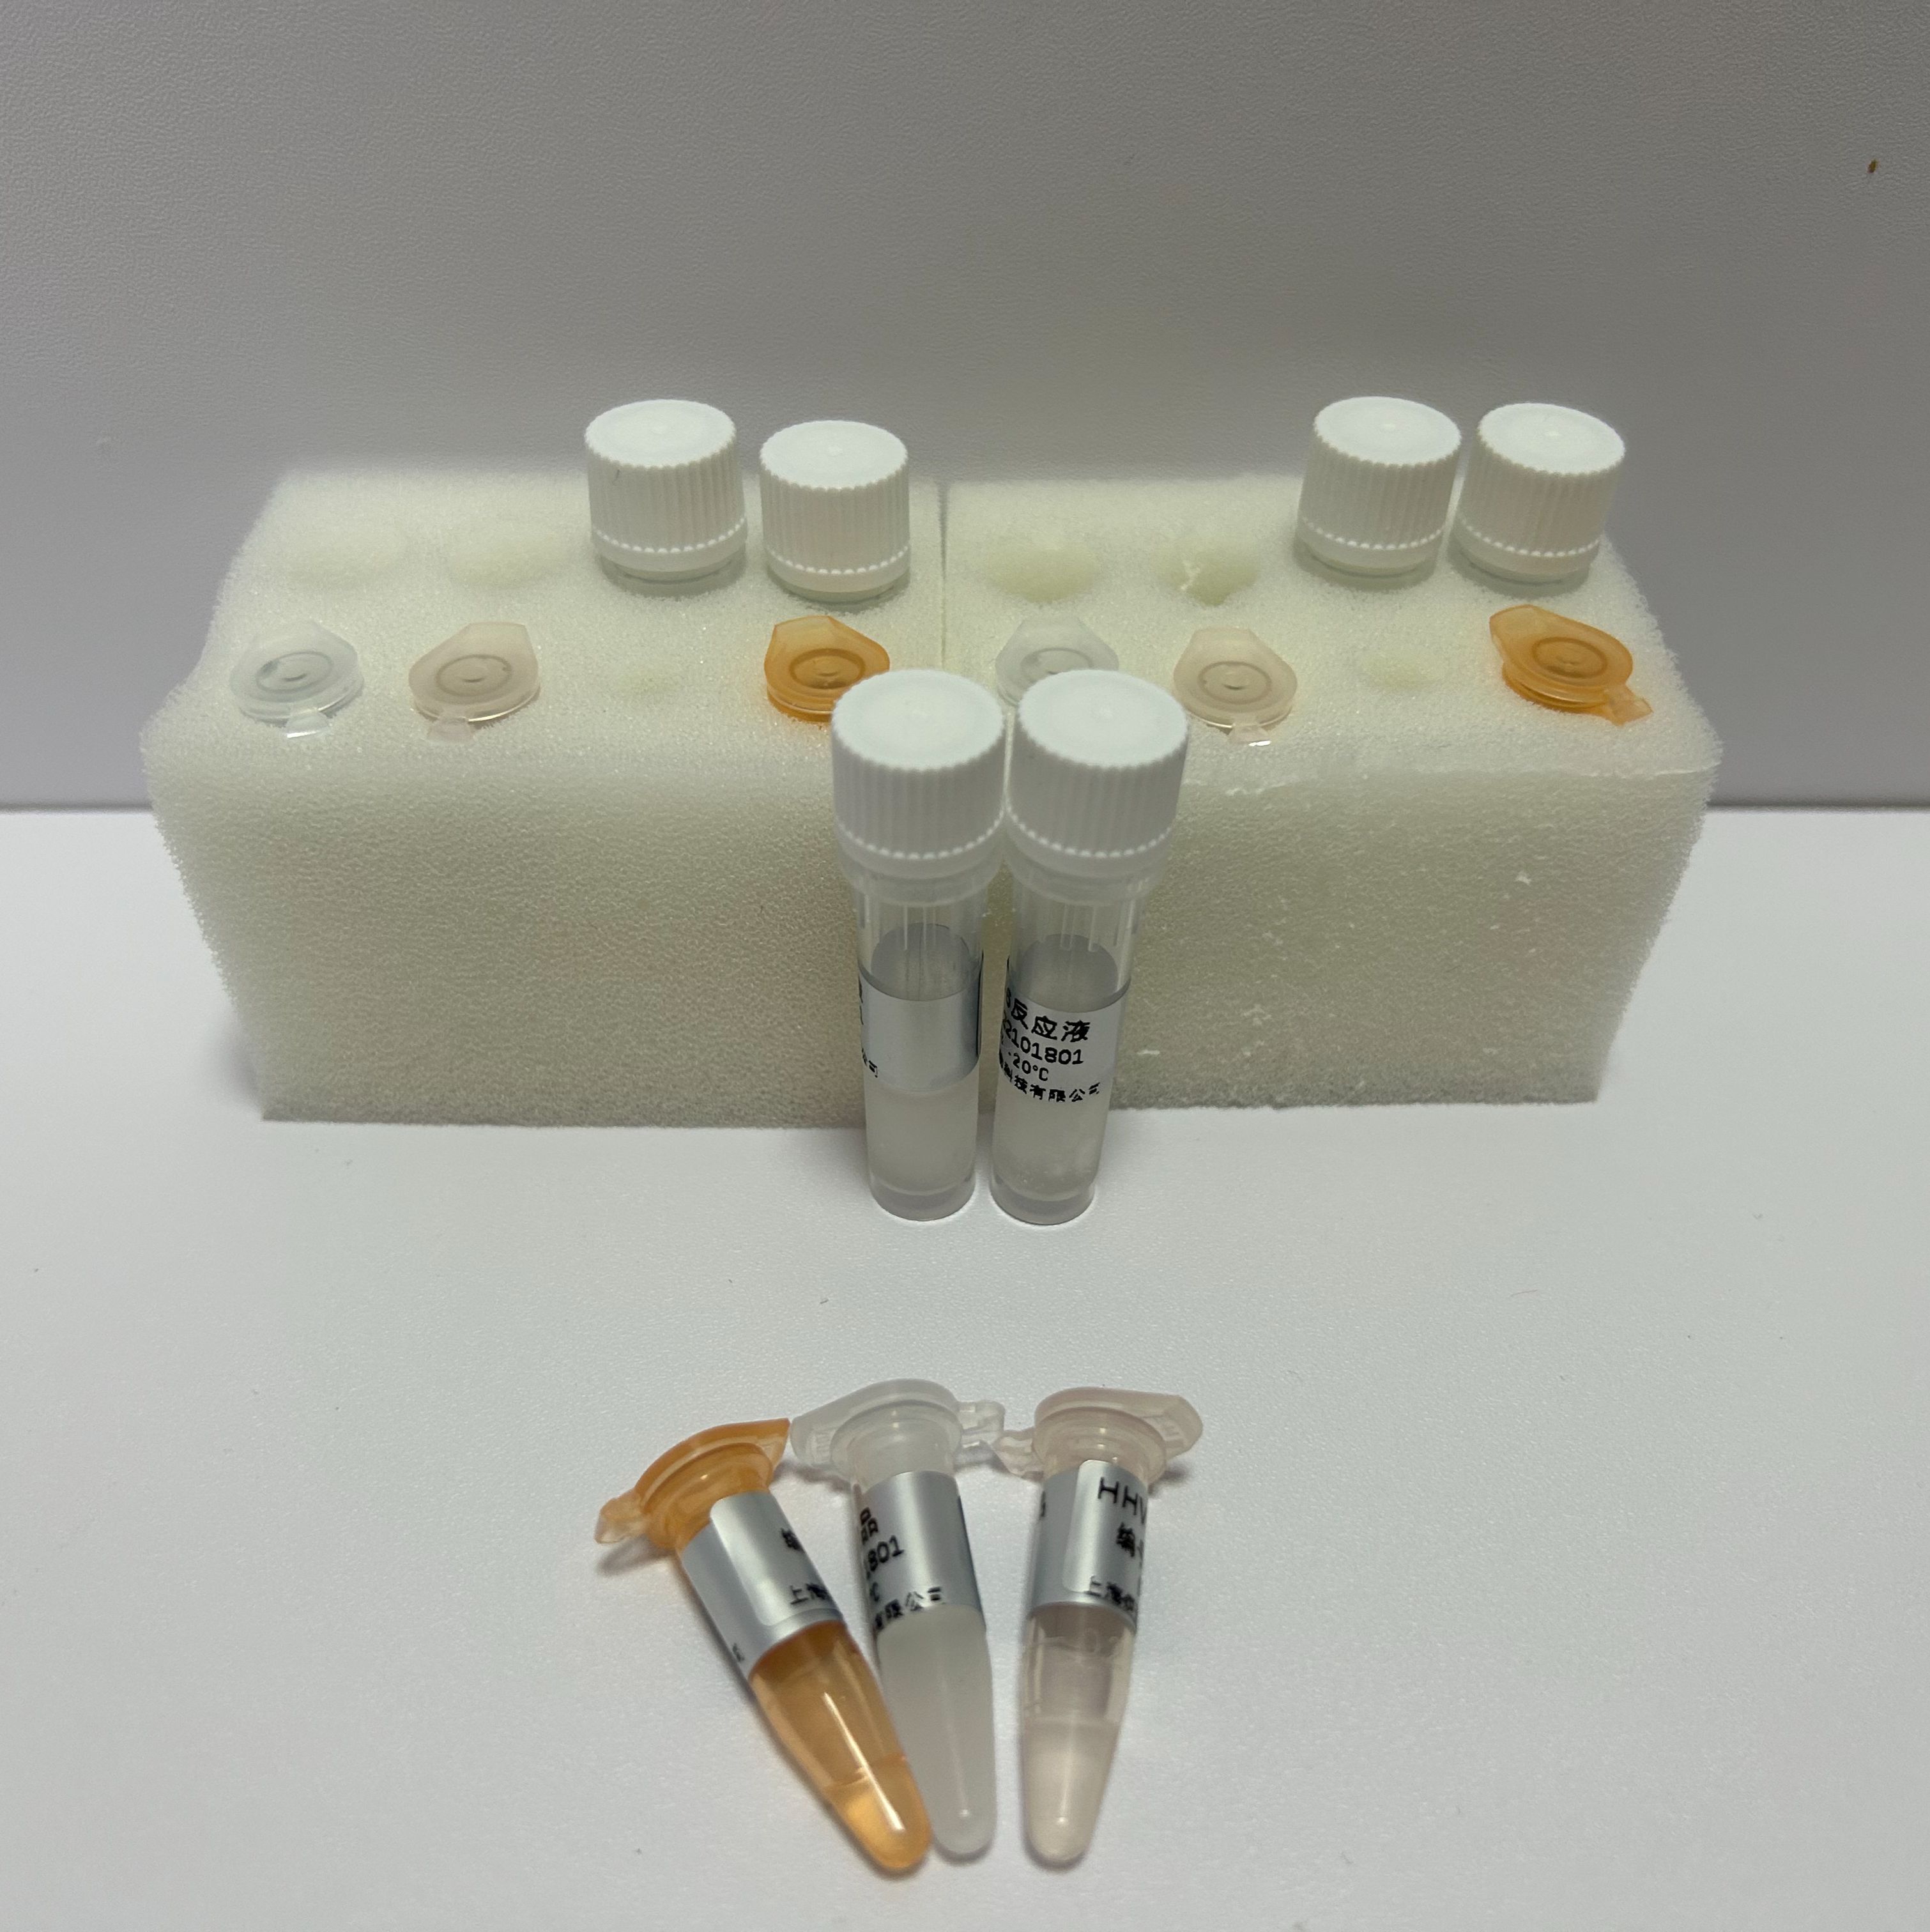 霍山石斛探针法荧光定量PCR试剂盒